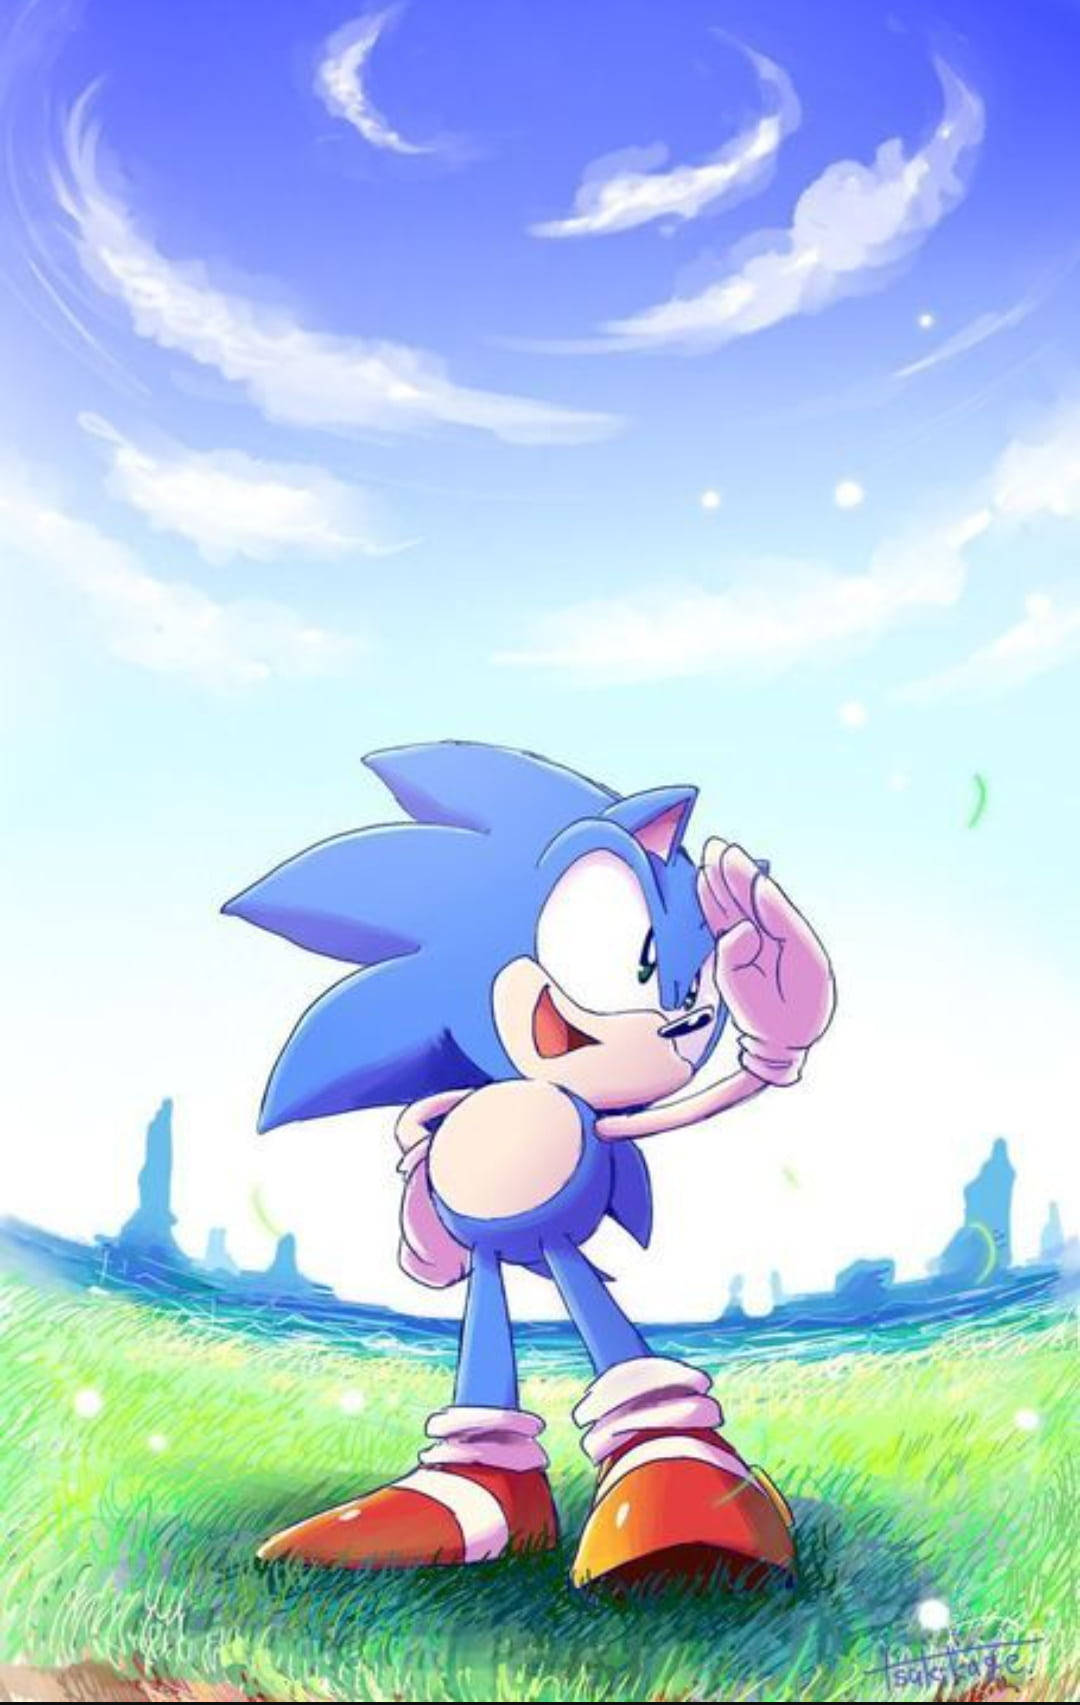 Jagantar Att Du Vill Ha En Bakgrundsbild Med Sonic The Hedgehog. Här Är Översättningen: 